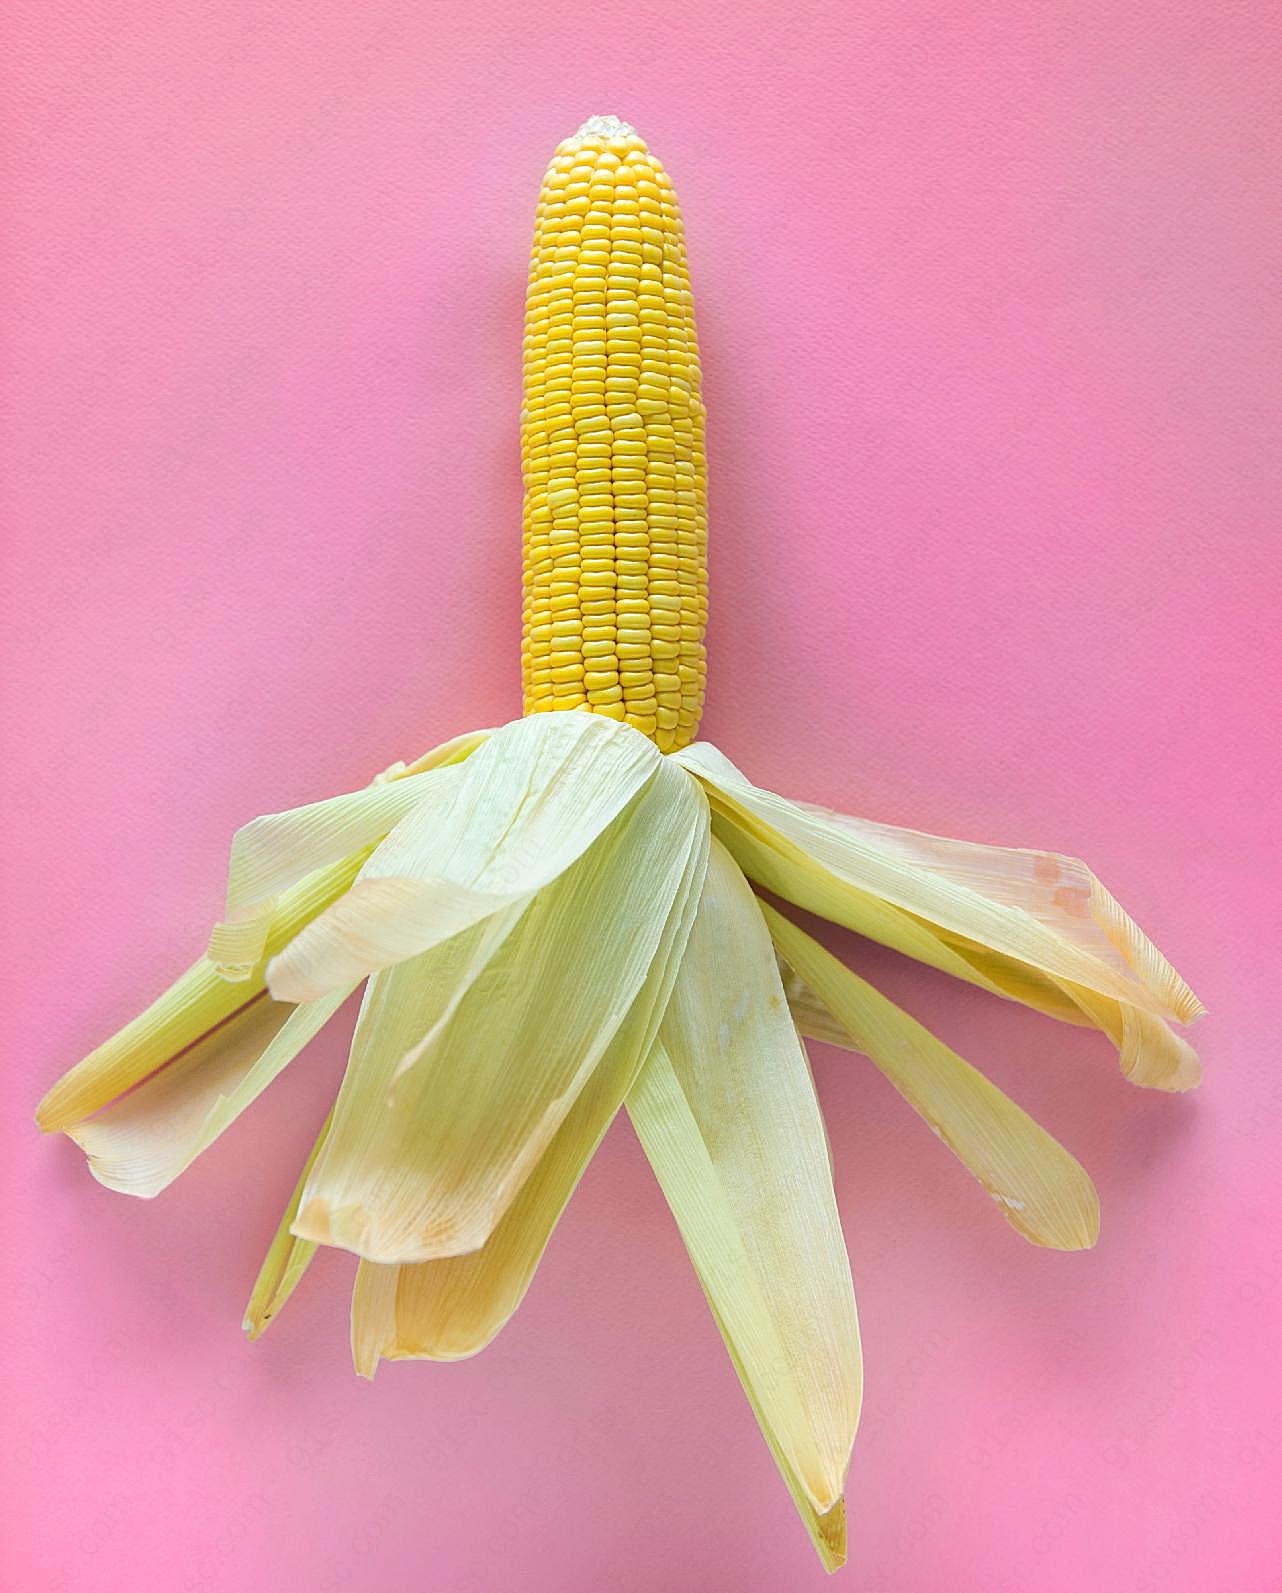 玉米棒单个图片高清摄影